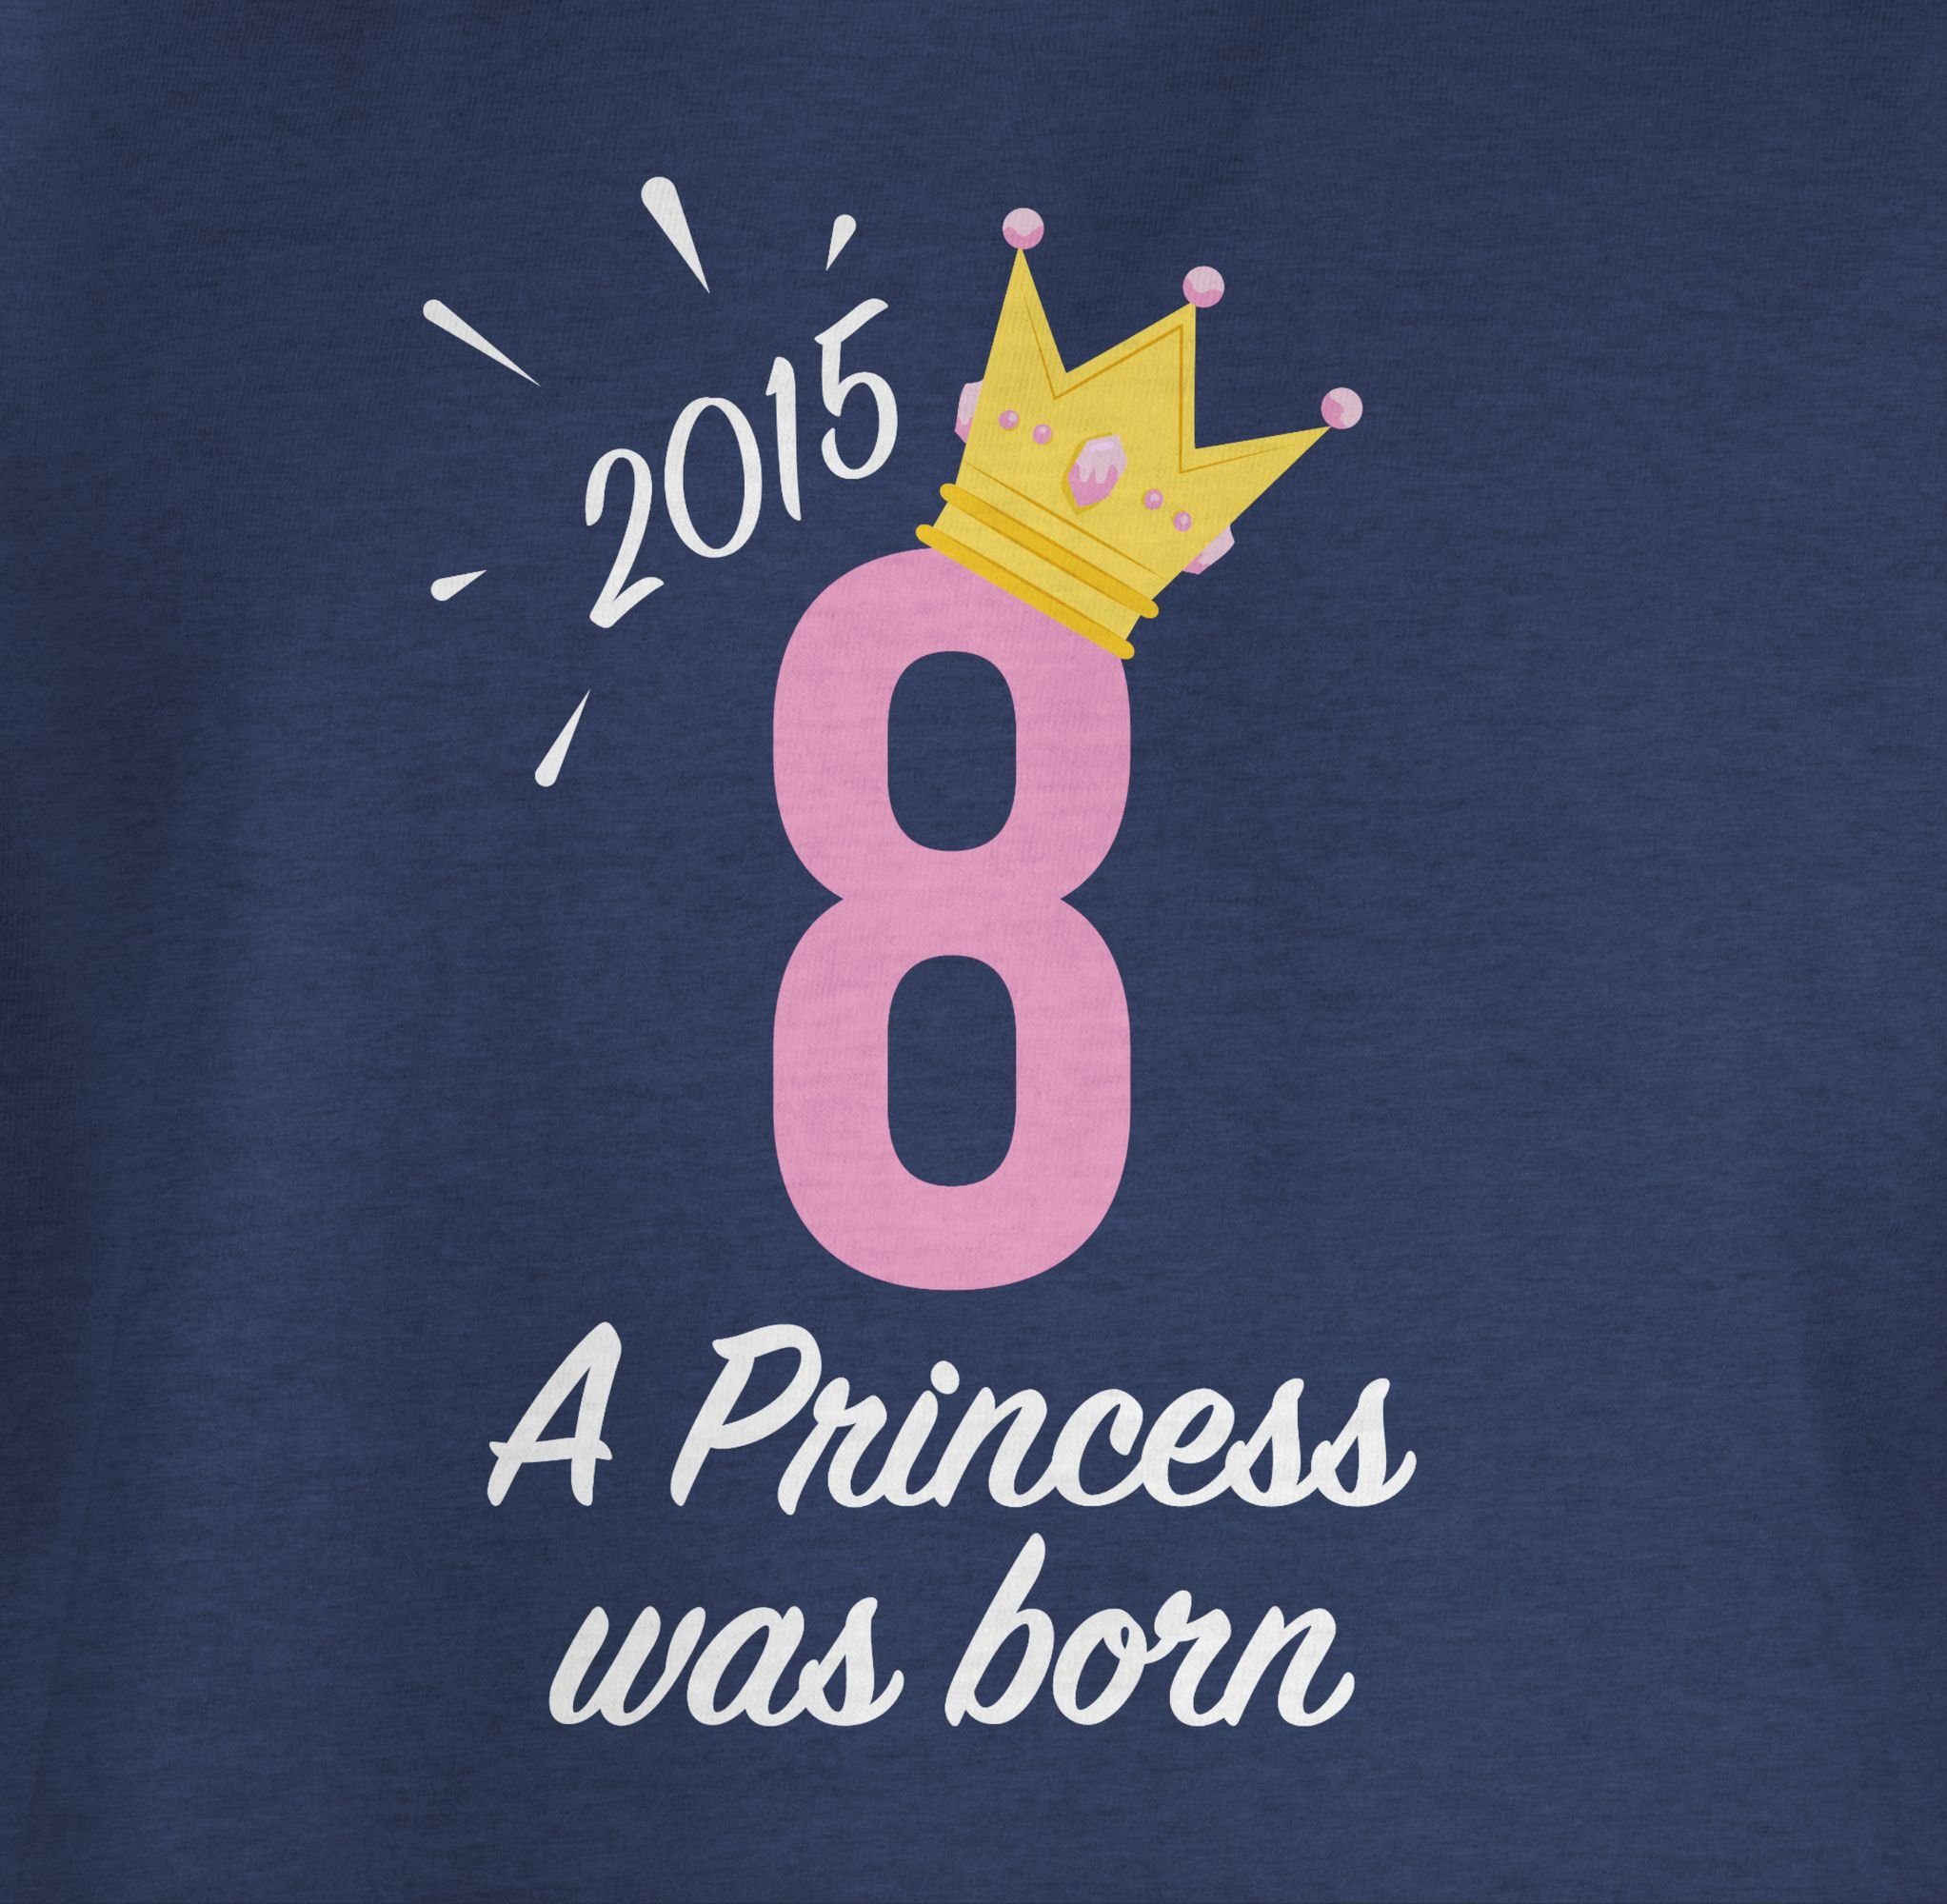 8. 2015 Dunkelblau Meliert Achter Princess Mädchen T-Shirt 2 Geburtstag Shirtracer